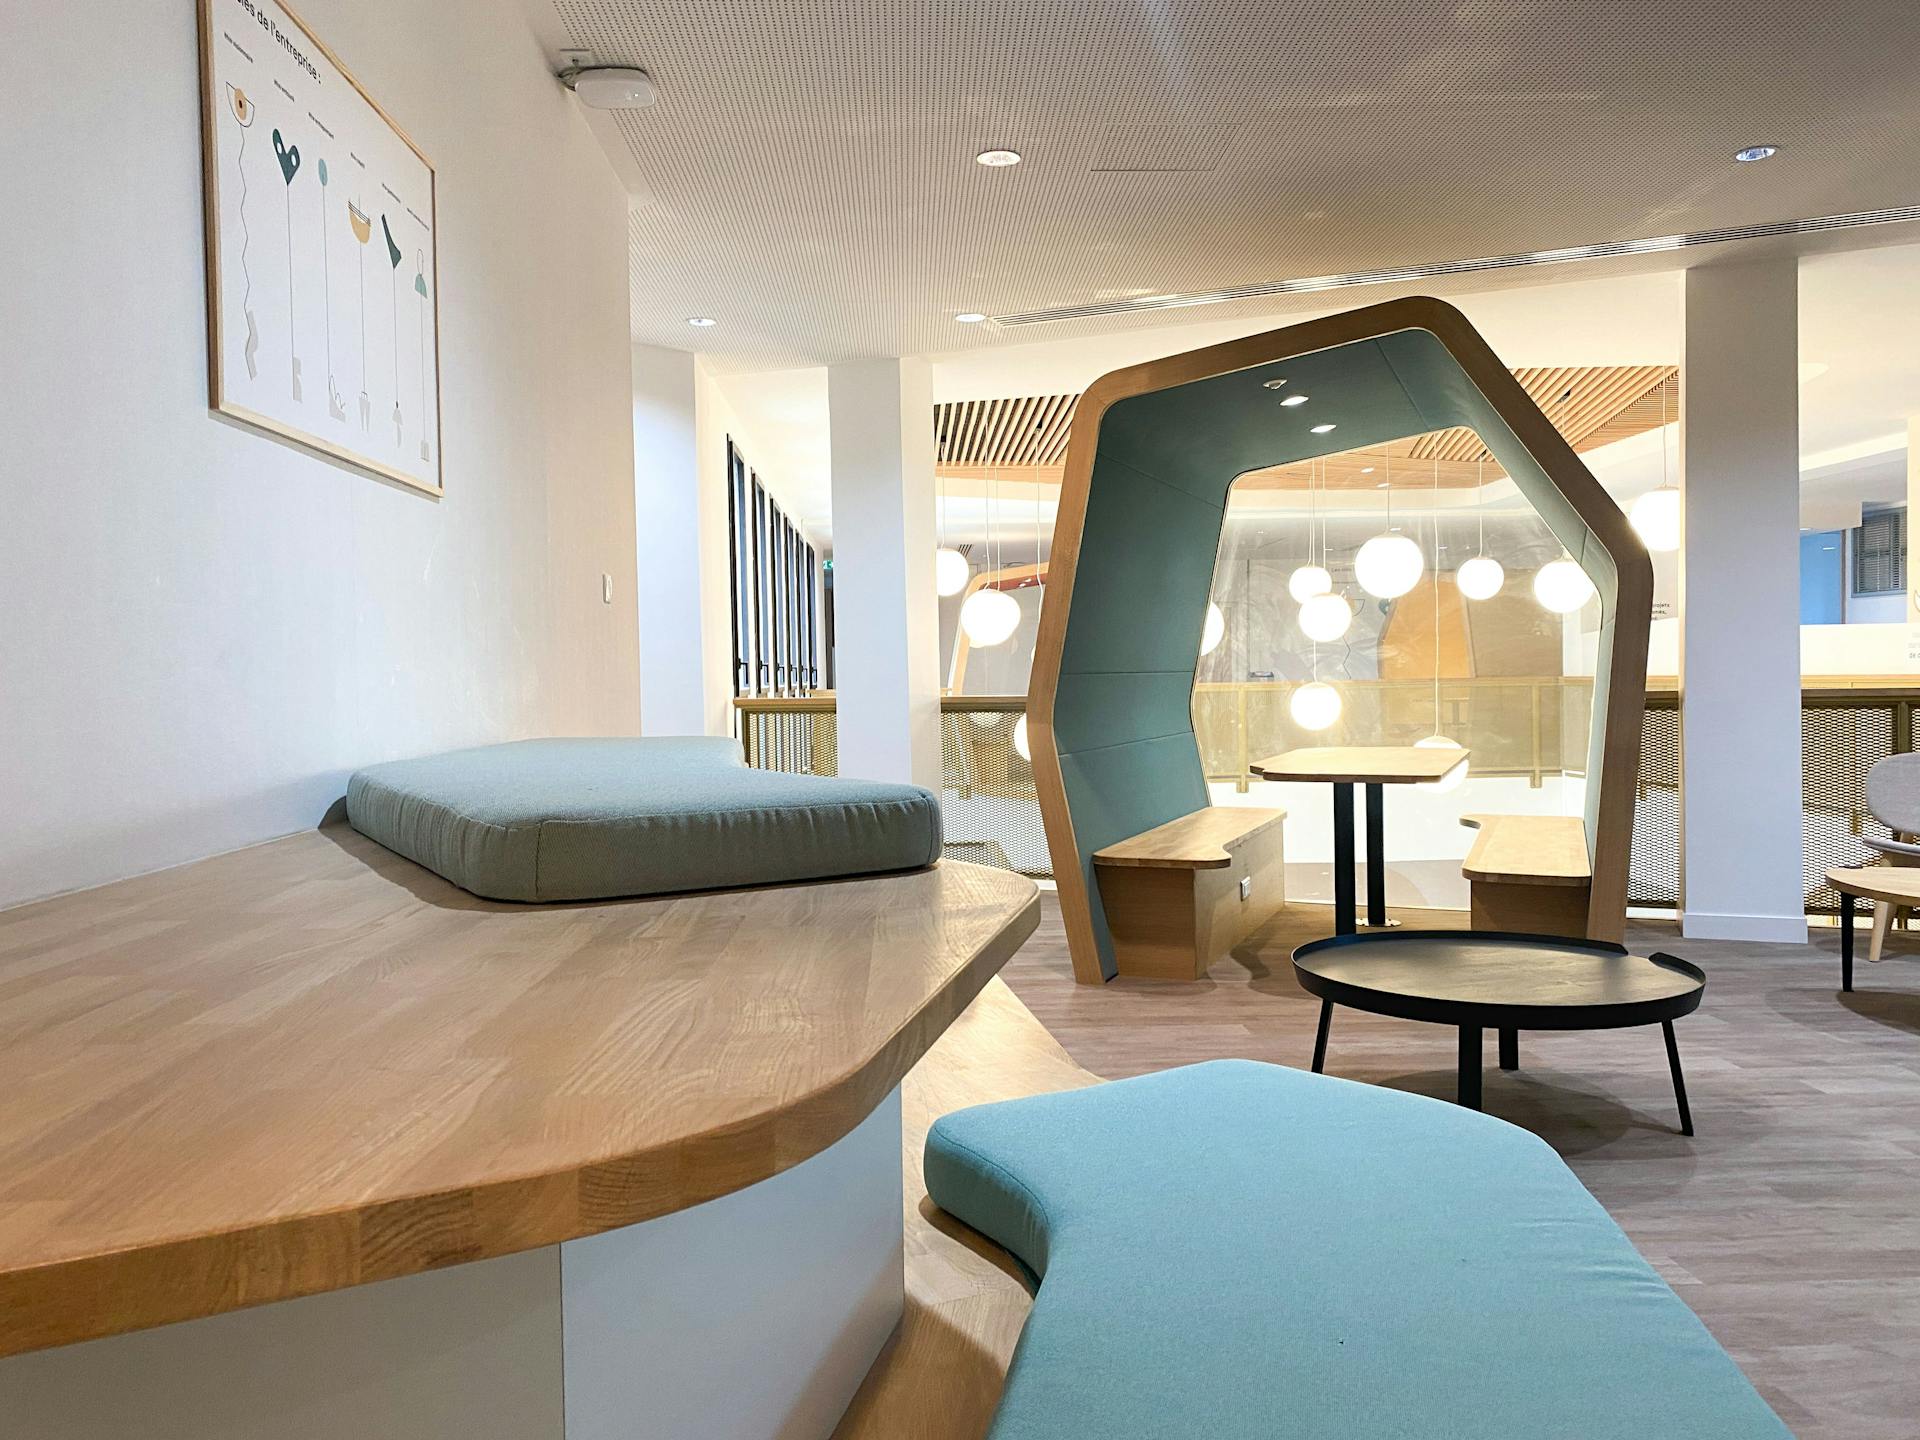 Du mobilier en bois, allant d'assises aux cabines d'isolation phonétique, conçus par l'agence de design Katra et fabriqués par Ici Nantes, servant l'aménagement d'intérieur de la nouvelle Maison de l'Entreprise à Saint-Nazaire.